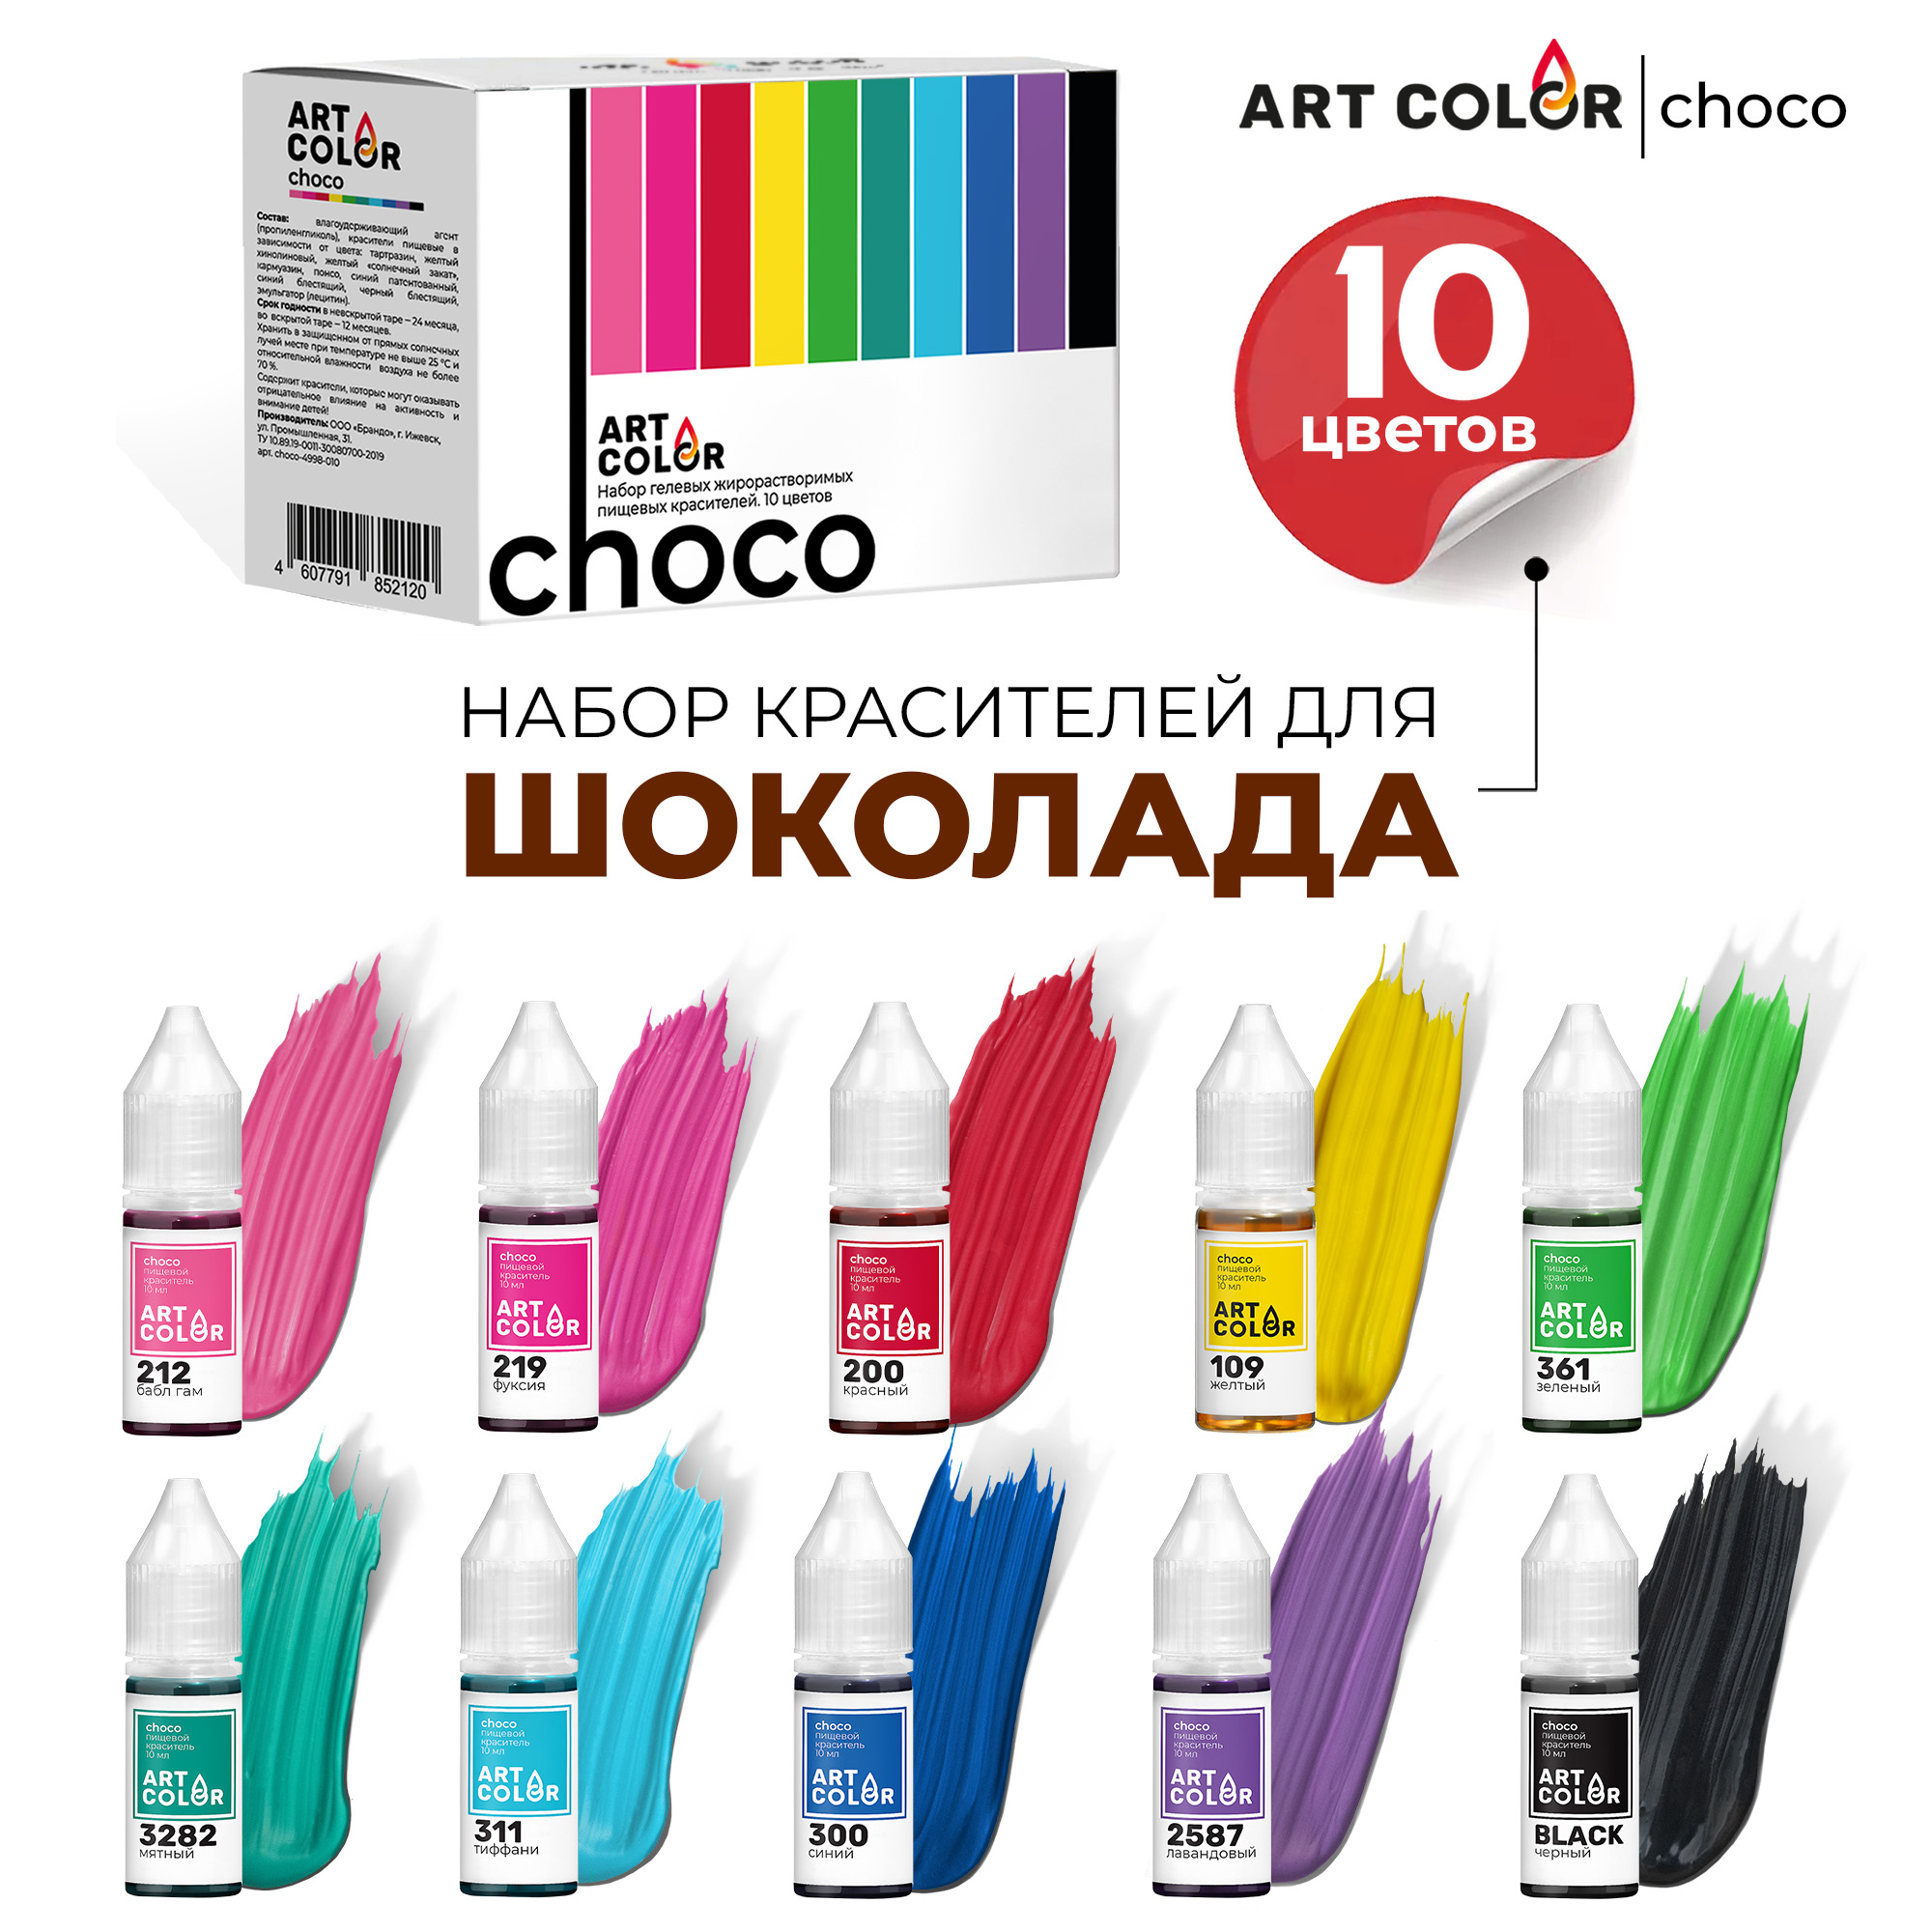 

Набор пищевых красителей ART COLOR Choco гелевые жирорастворимые, 10 шт по 10 мл, CHOCO